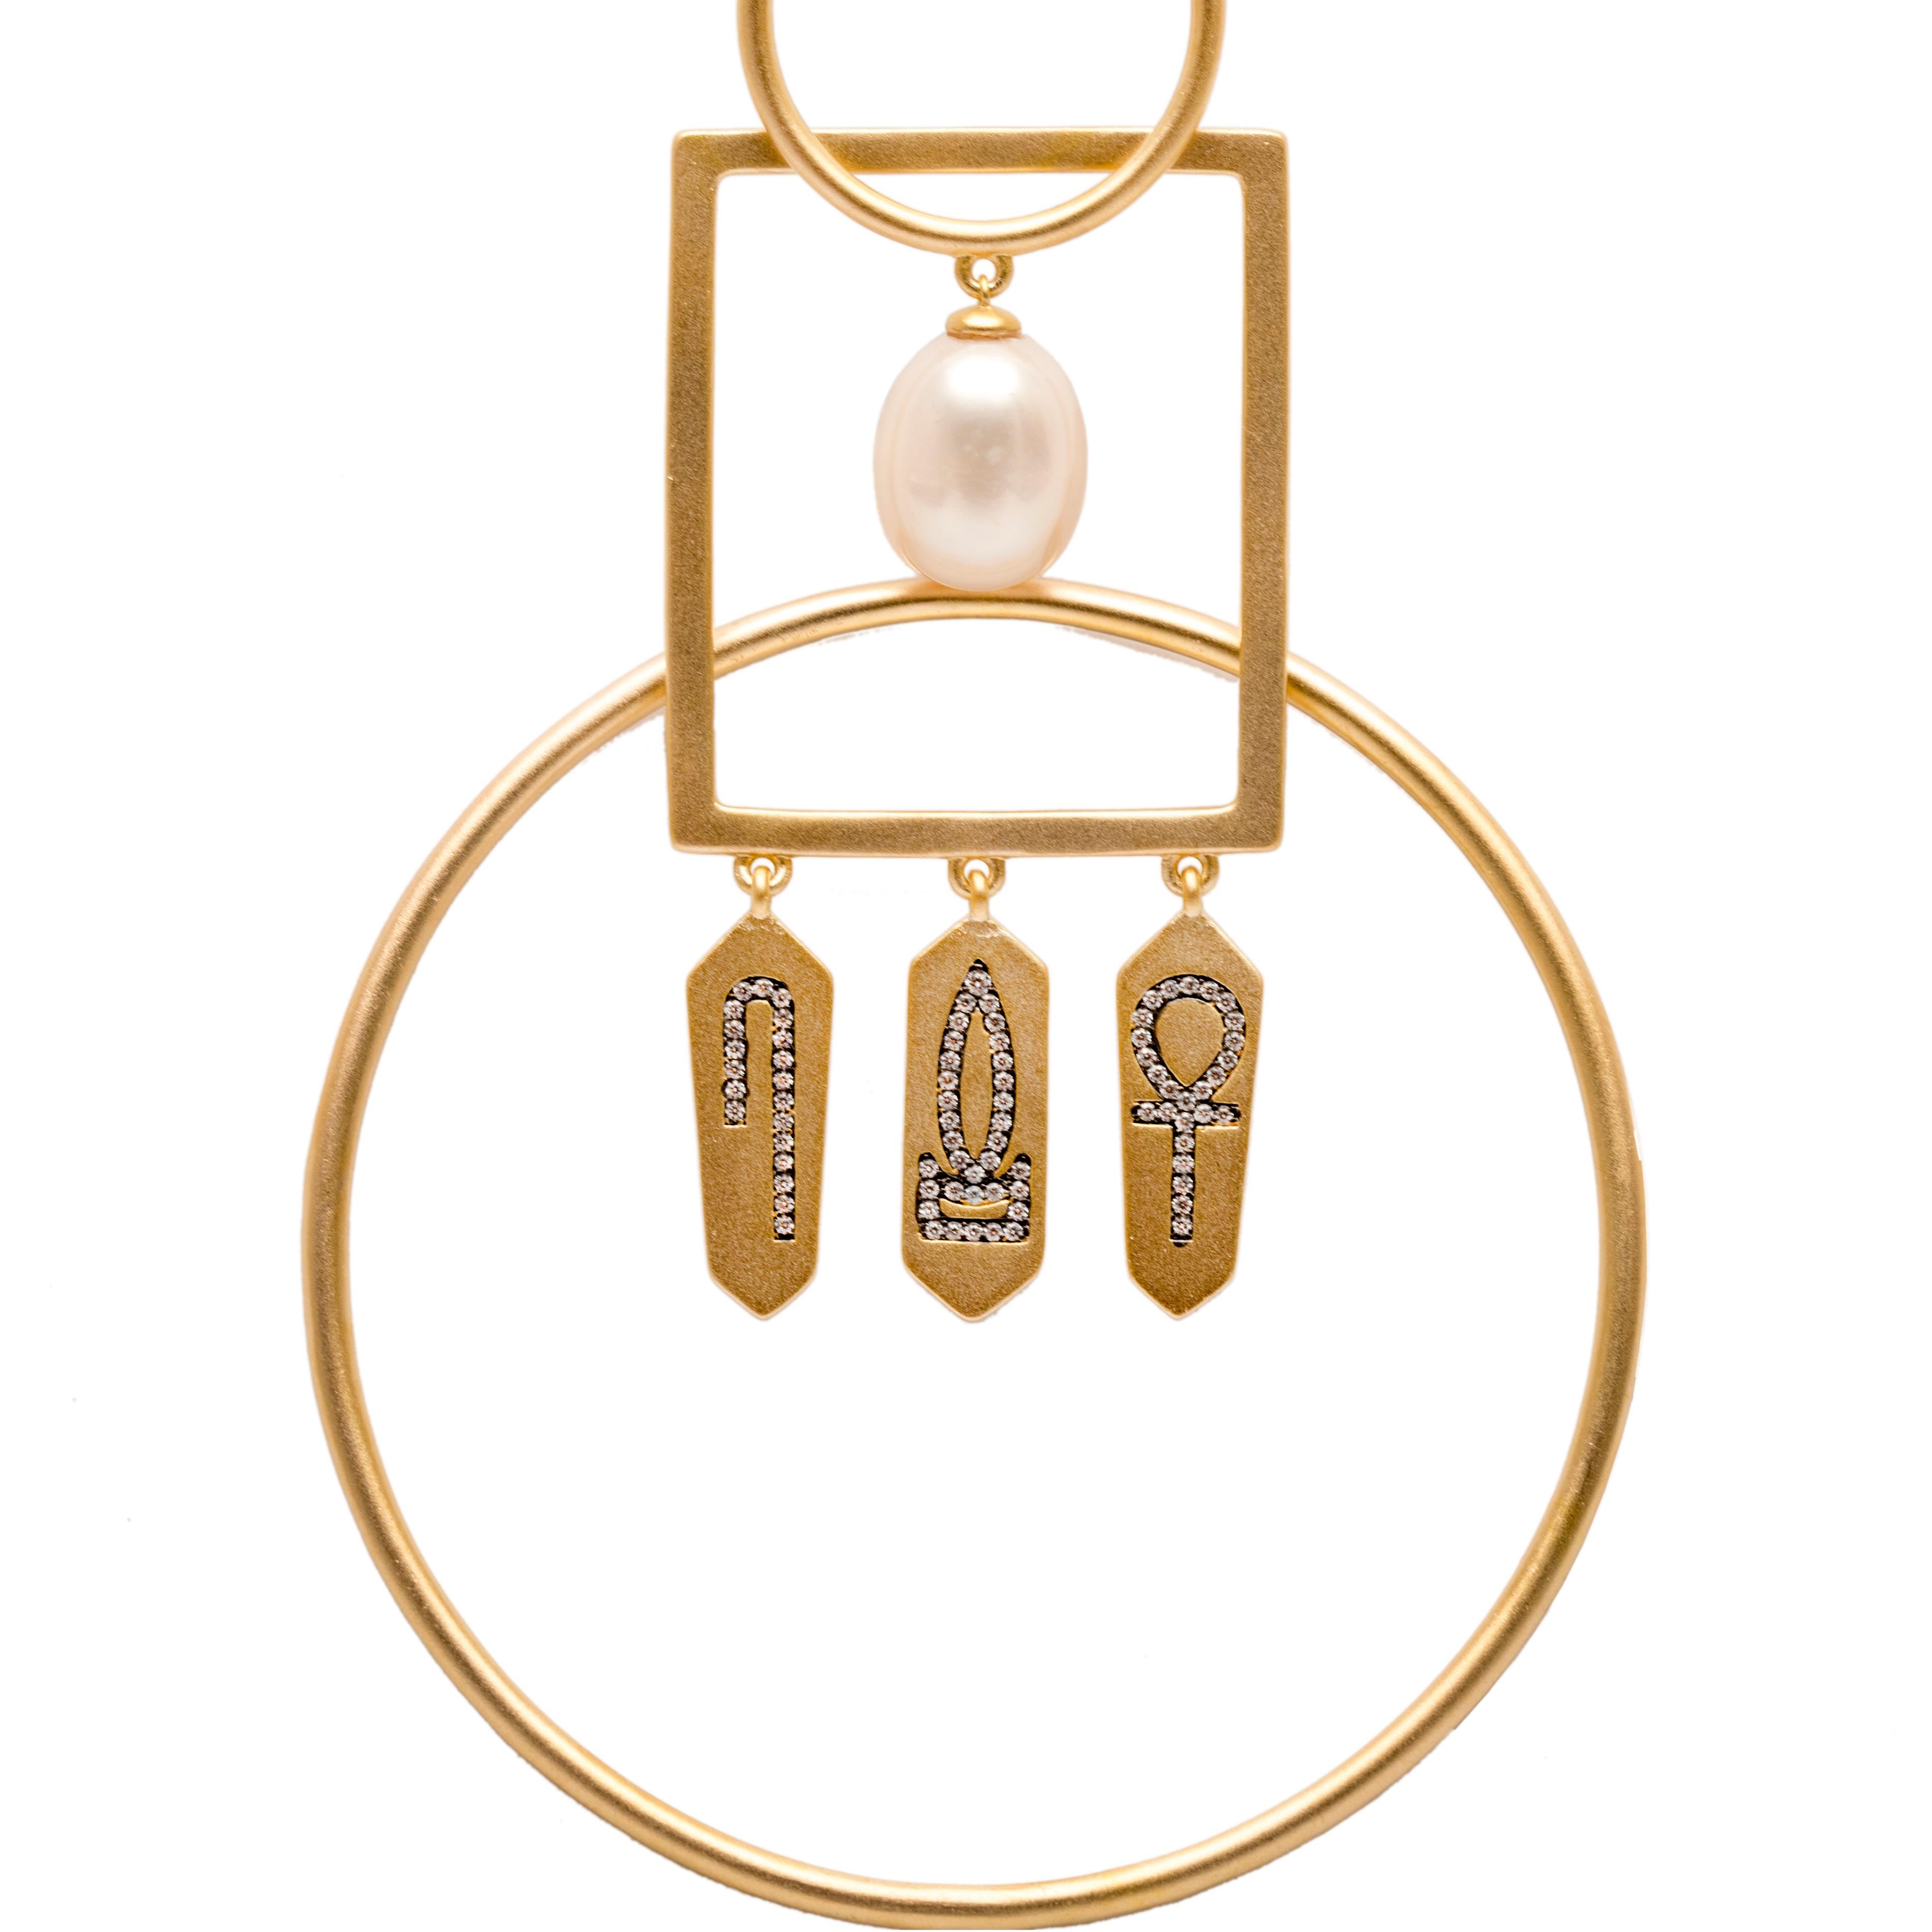 Neueste Ergänzung zu Ammaniis Malikat = Queens Sammlungen. Handgefertigte, miteinander verbundene Ohrringe mit Amuletten, die mit Hieroglyphenzeichen beschriftet sind, um Ihnen die Kraft des Lebens, der Gesundheit und des Wohlstands zu verleihen.